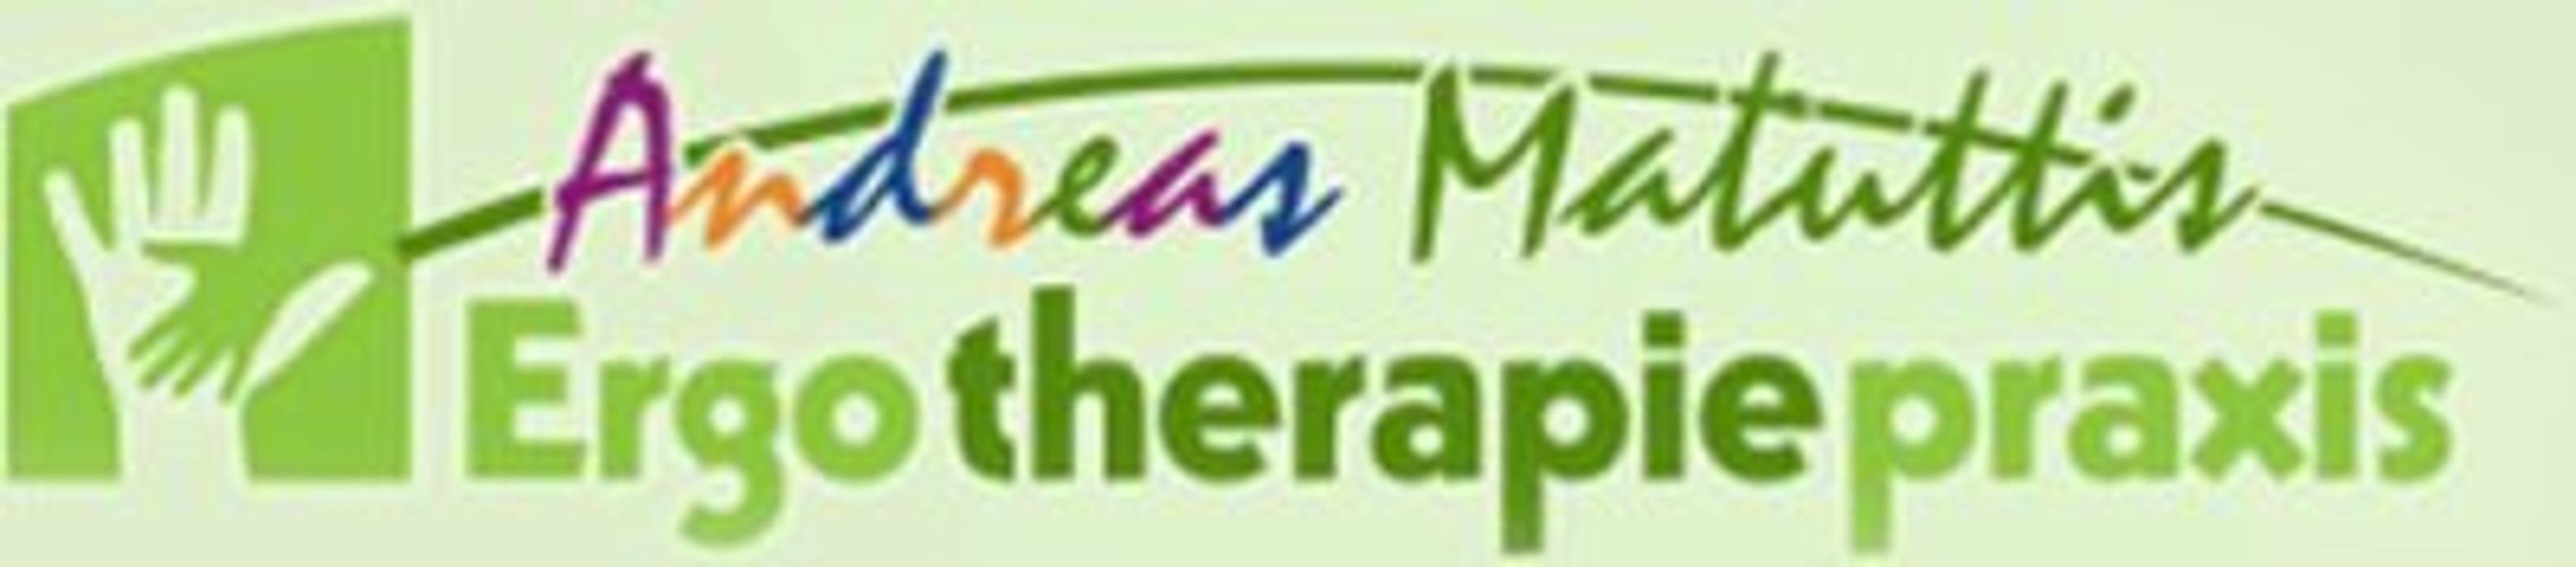 Logo der Firma Ergotherapie Praxis Andreas Matuttis aus Tuttlingen